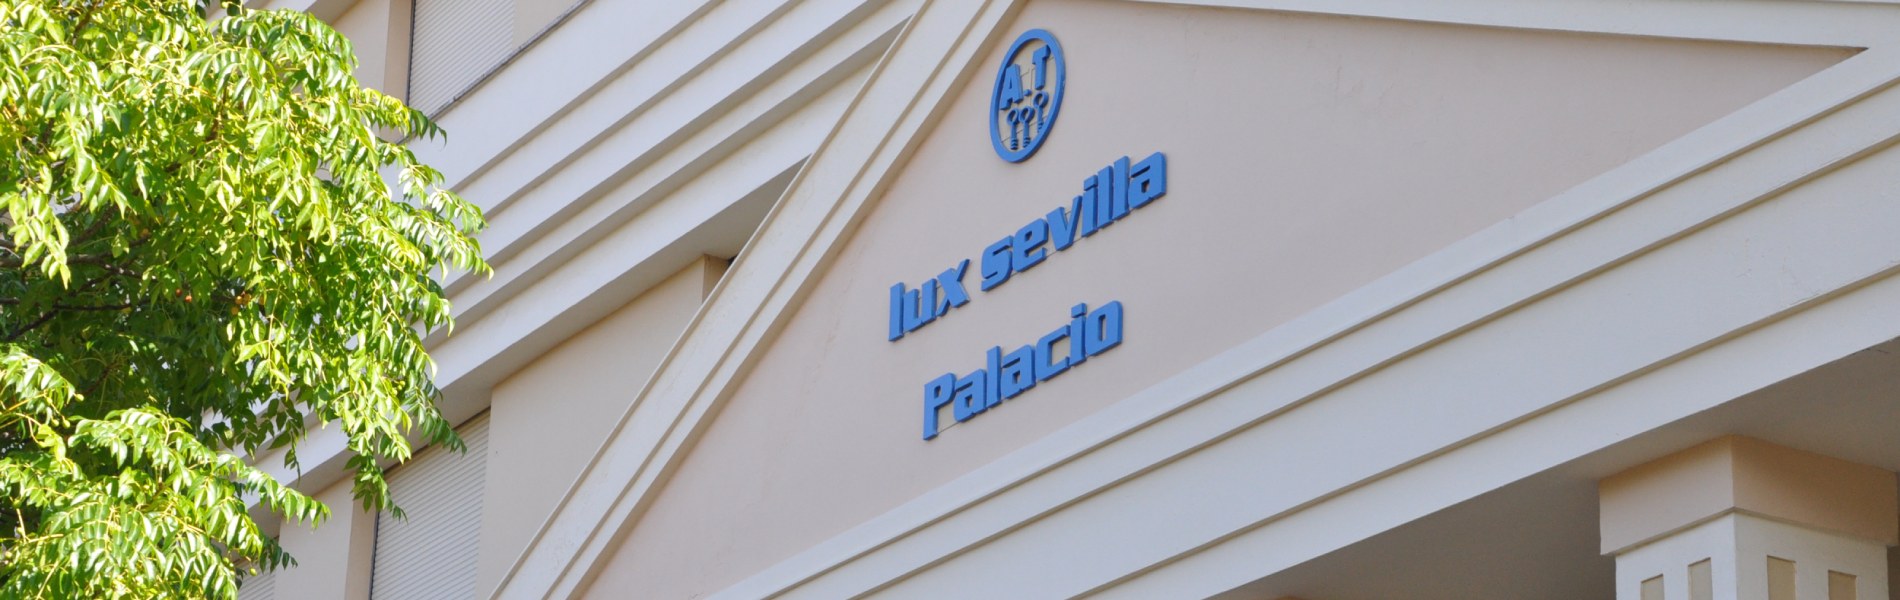 Apartamentos Lux Sevilla Palacio  header